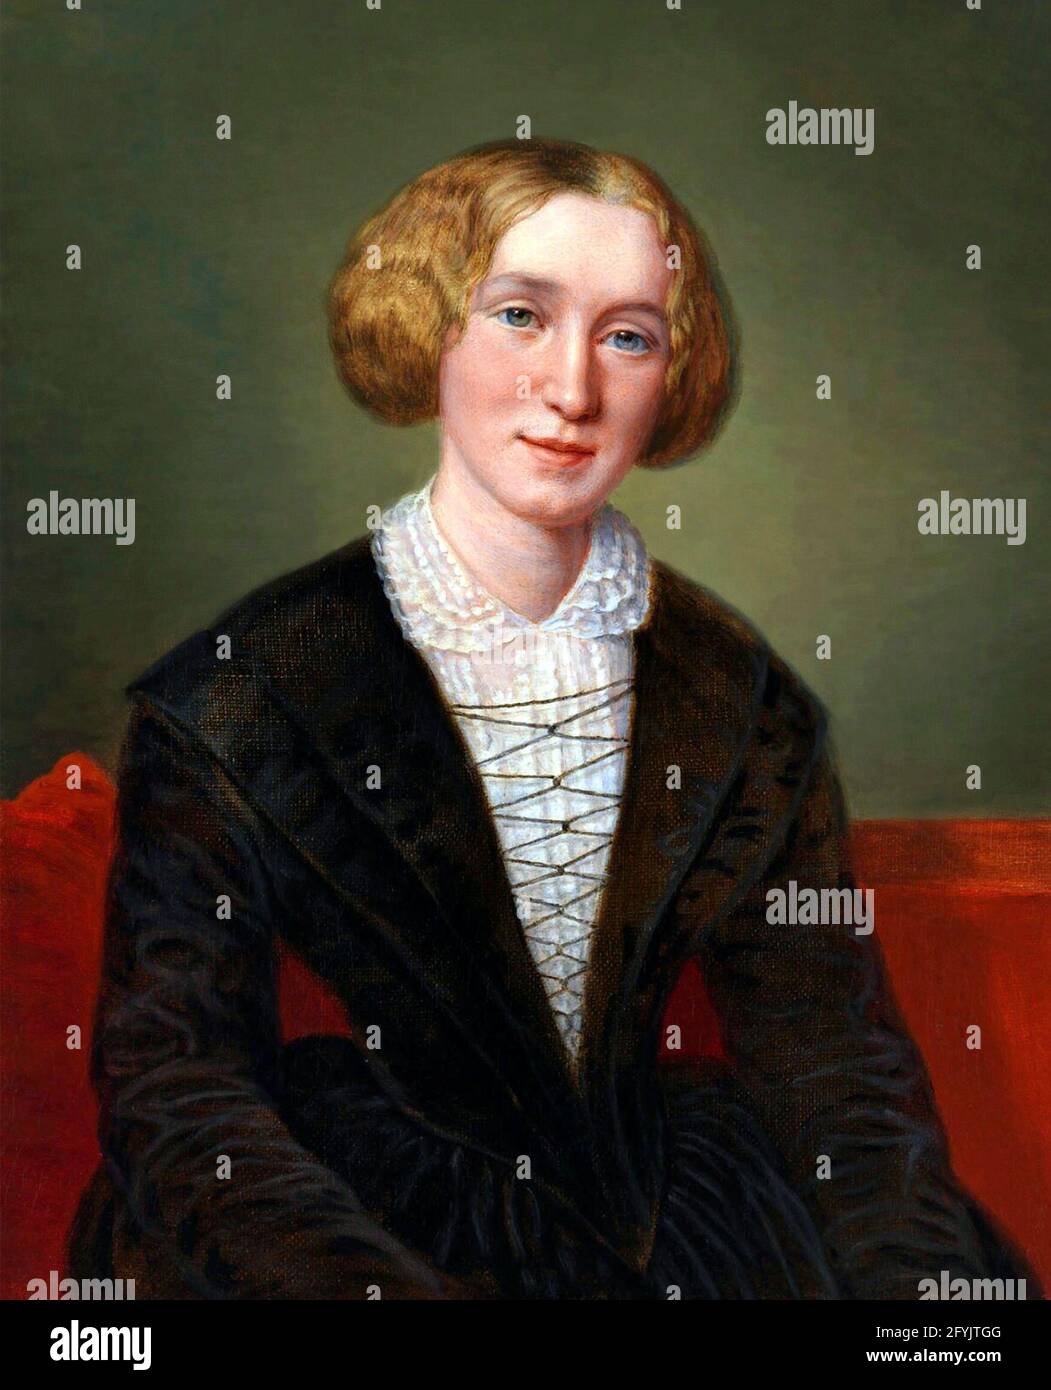 George Eliot (Mary Anne Evans - 1819-1880). Portrait du romancier anglais, copie de l’œuvre de François d’Albert Durade, huile sur toile, 1849 Banque D'Images